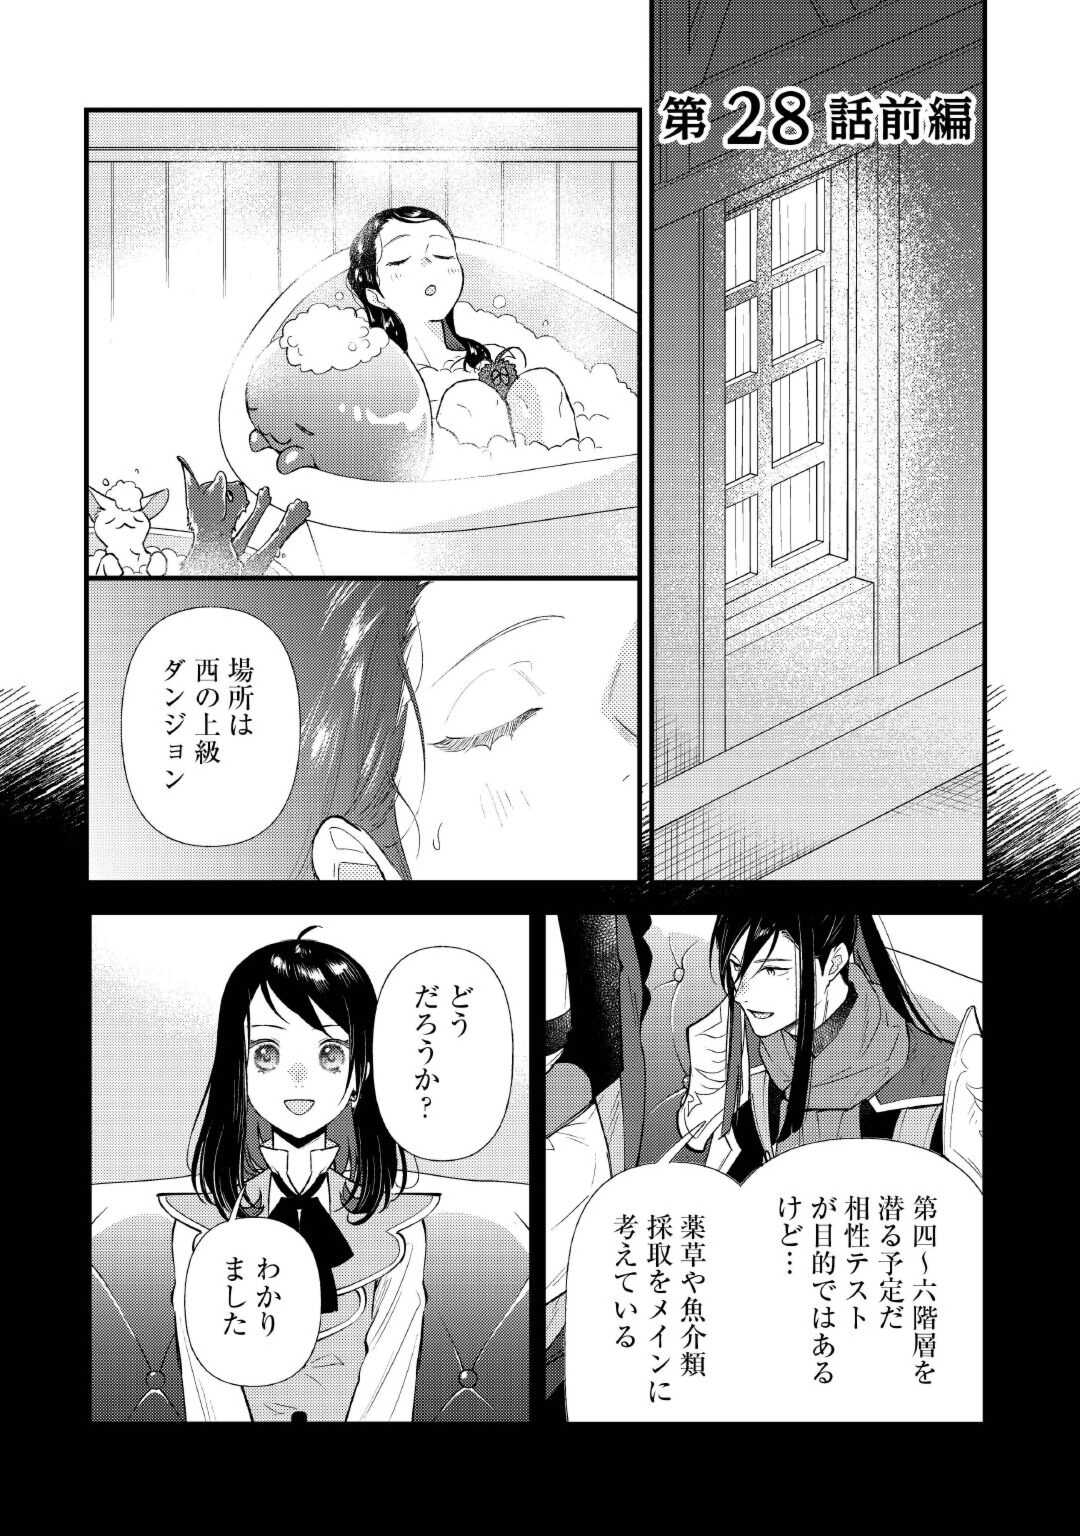 Tenisaki wa Kusushi ga Sukunai Sekai Deshita - Chapter 28 - Page 1